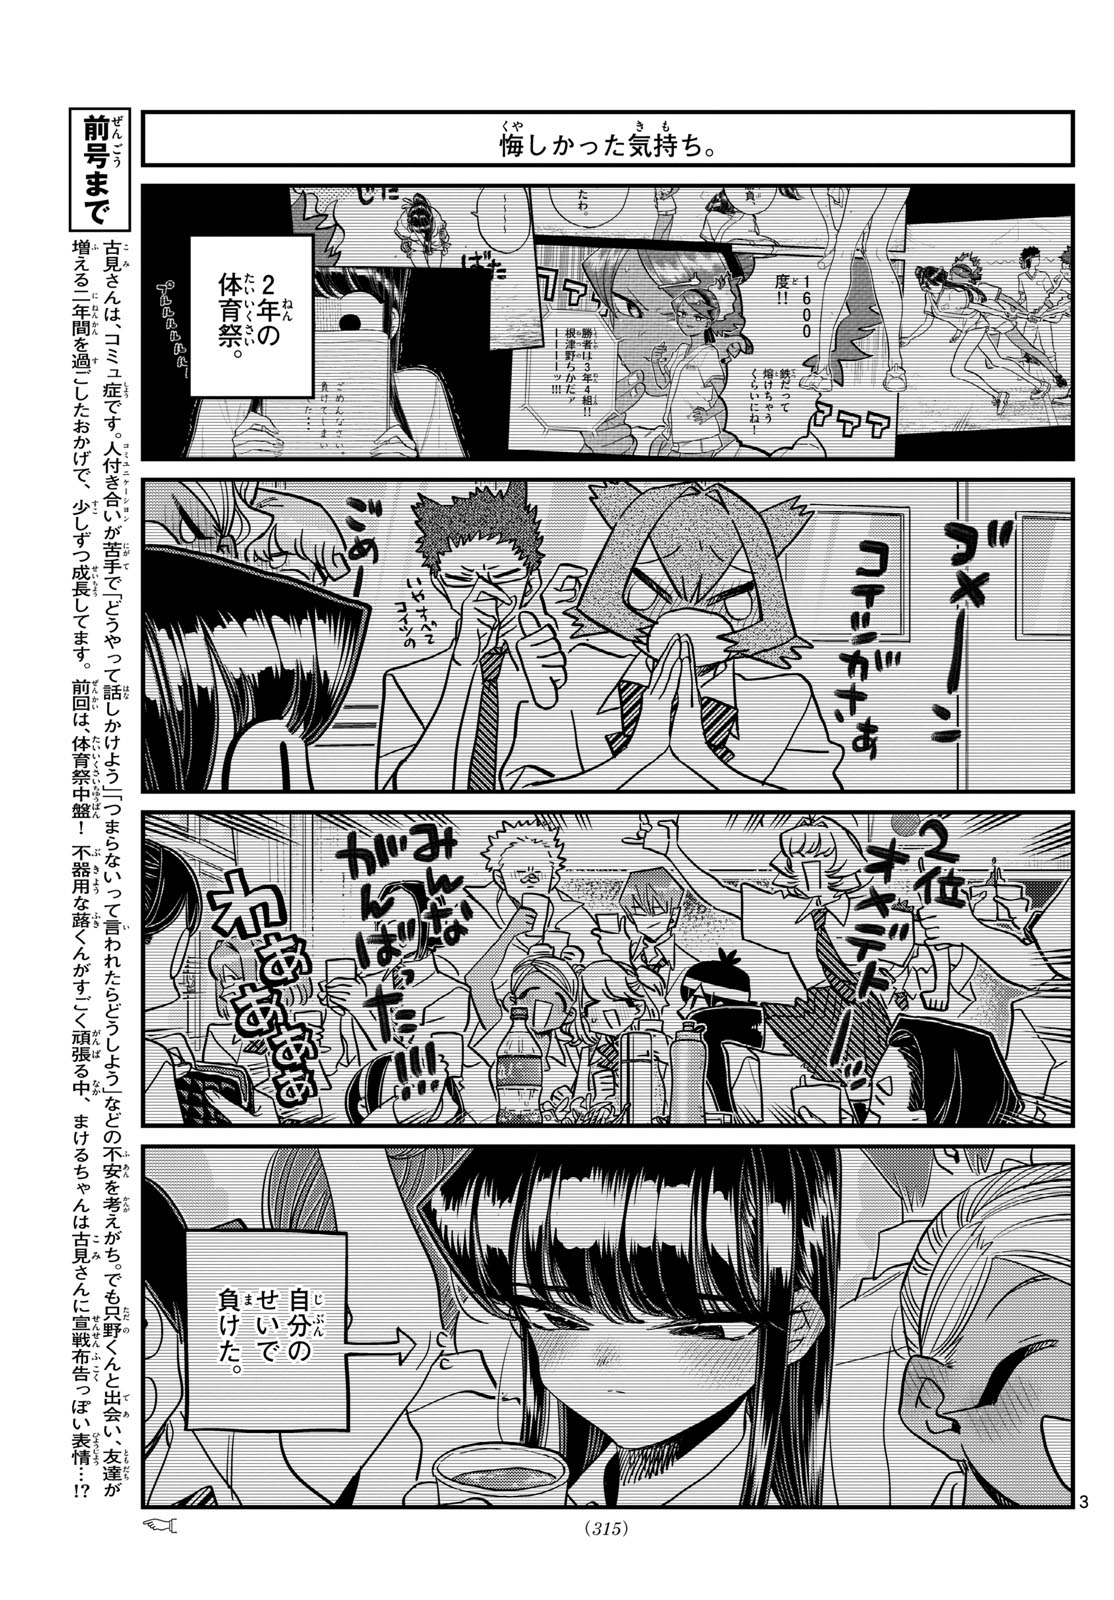 Komi-san wa Komyushou Desu - Chapter 431 - Page 3